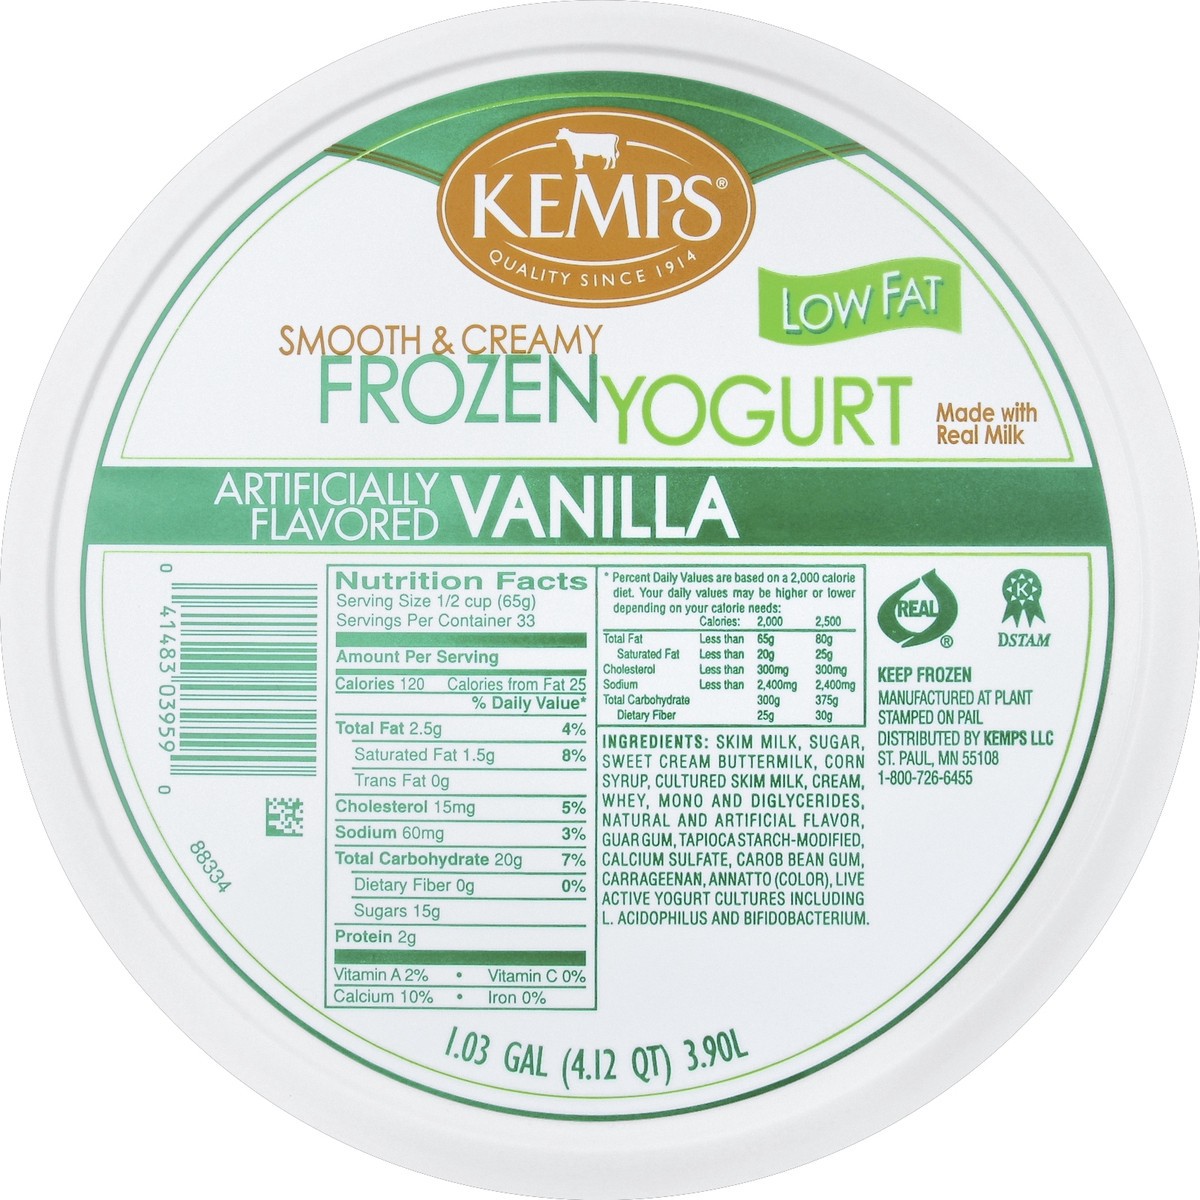 slide 3 of 3, Kemps Frozen Yogurt 1.03 gl, 1.03 gal